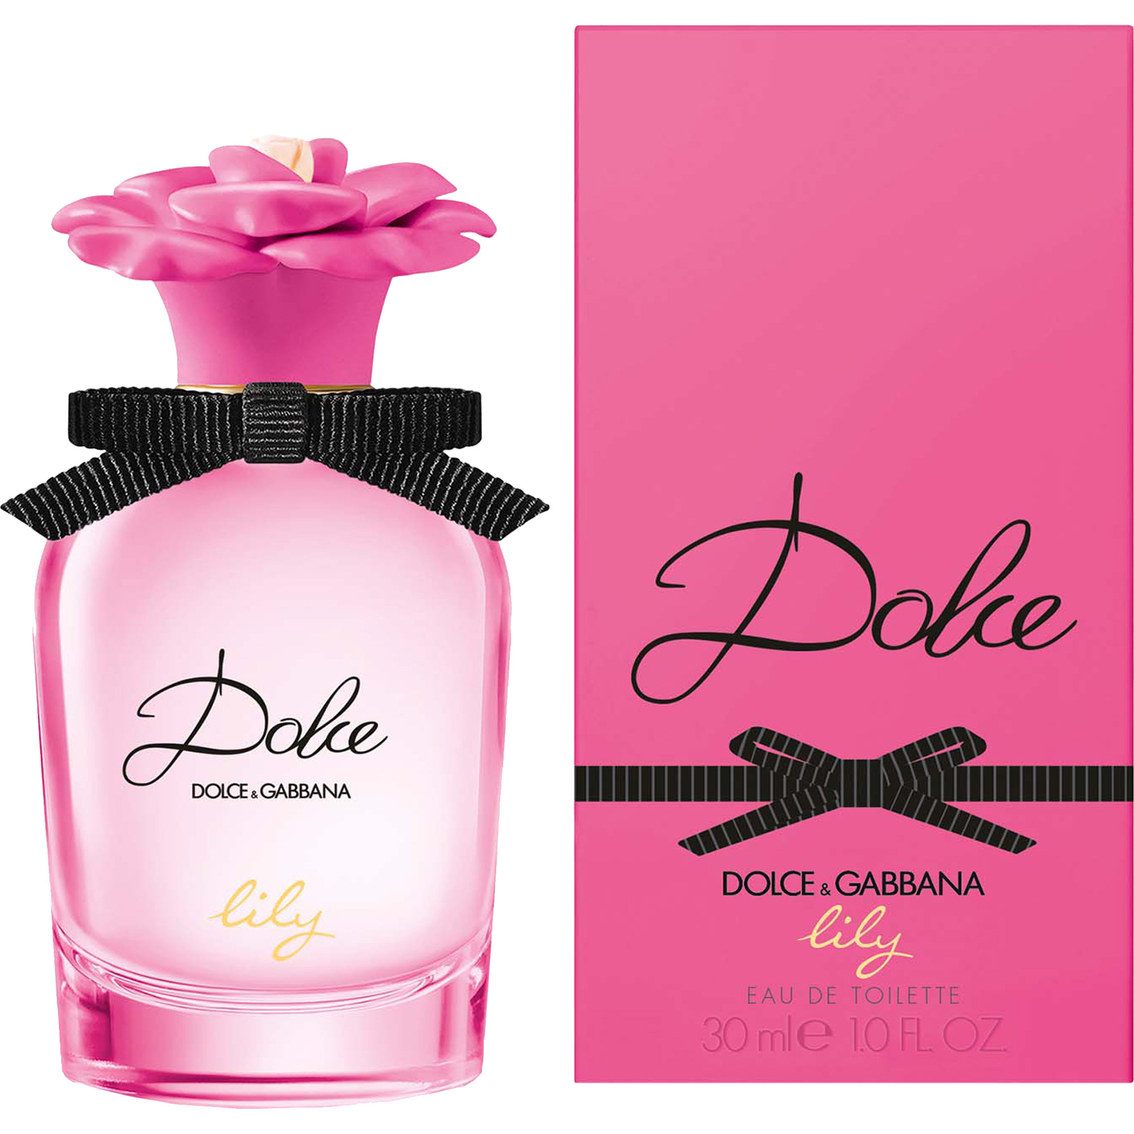 Dolce & Gabbana Dolce Lily Eau De Toilette - Image 2 of 5